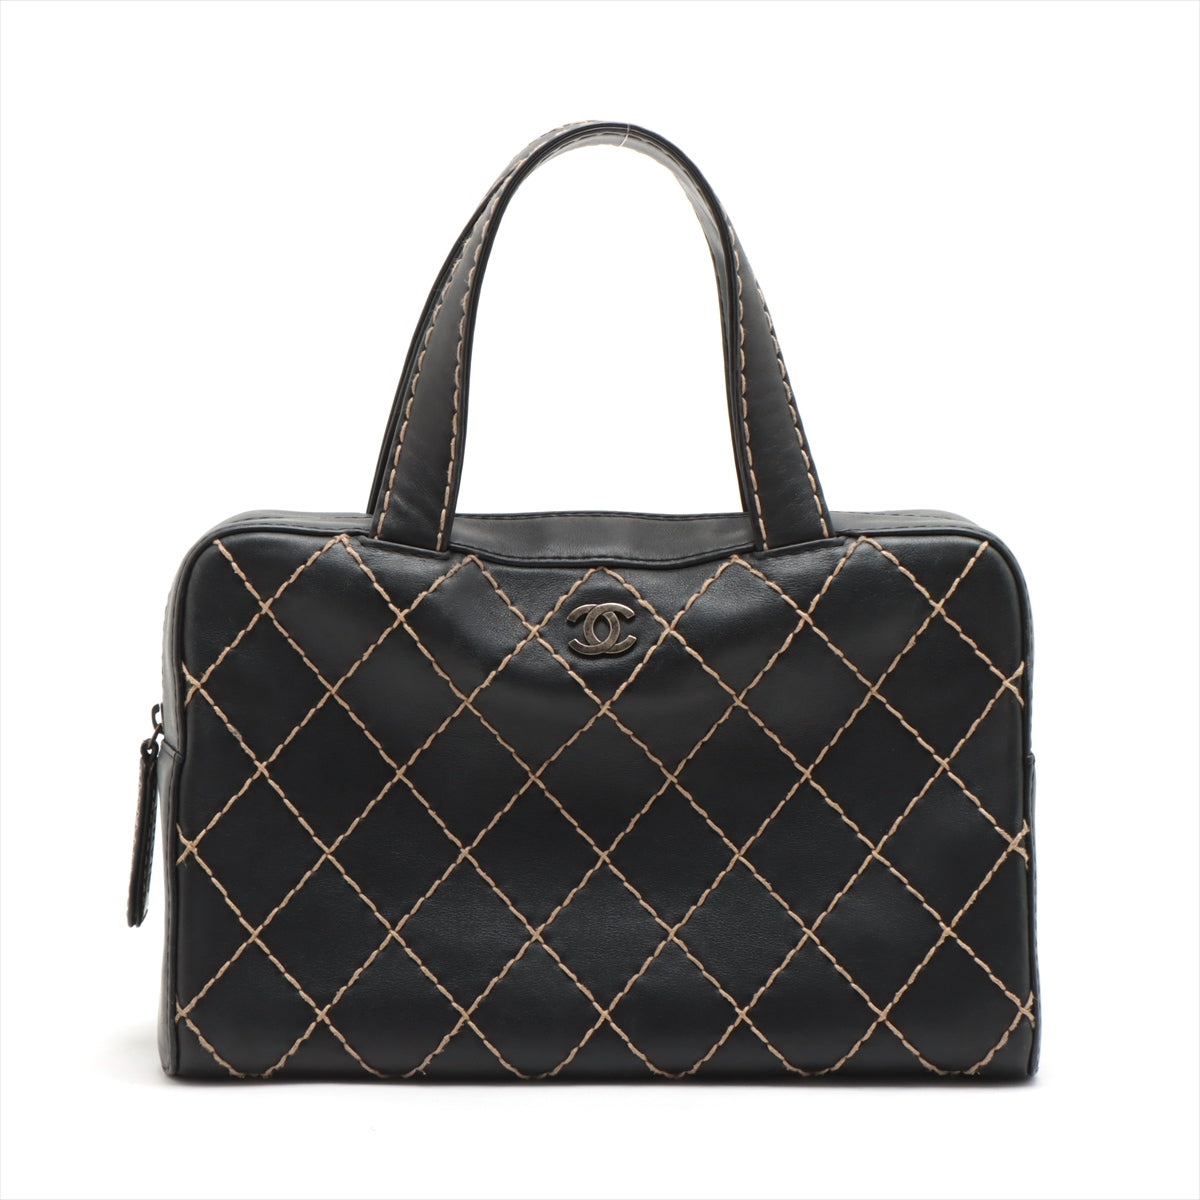 Chanel Wild Stitch Lambskin Handbag Black Gunmetal Fittings 6XXXXXX